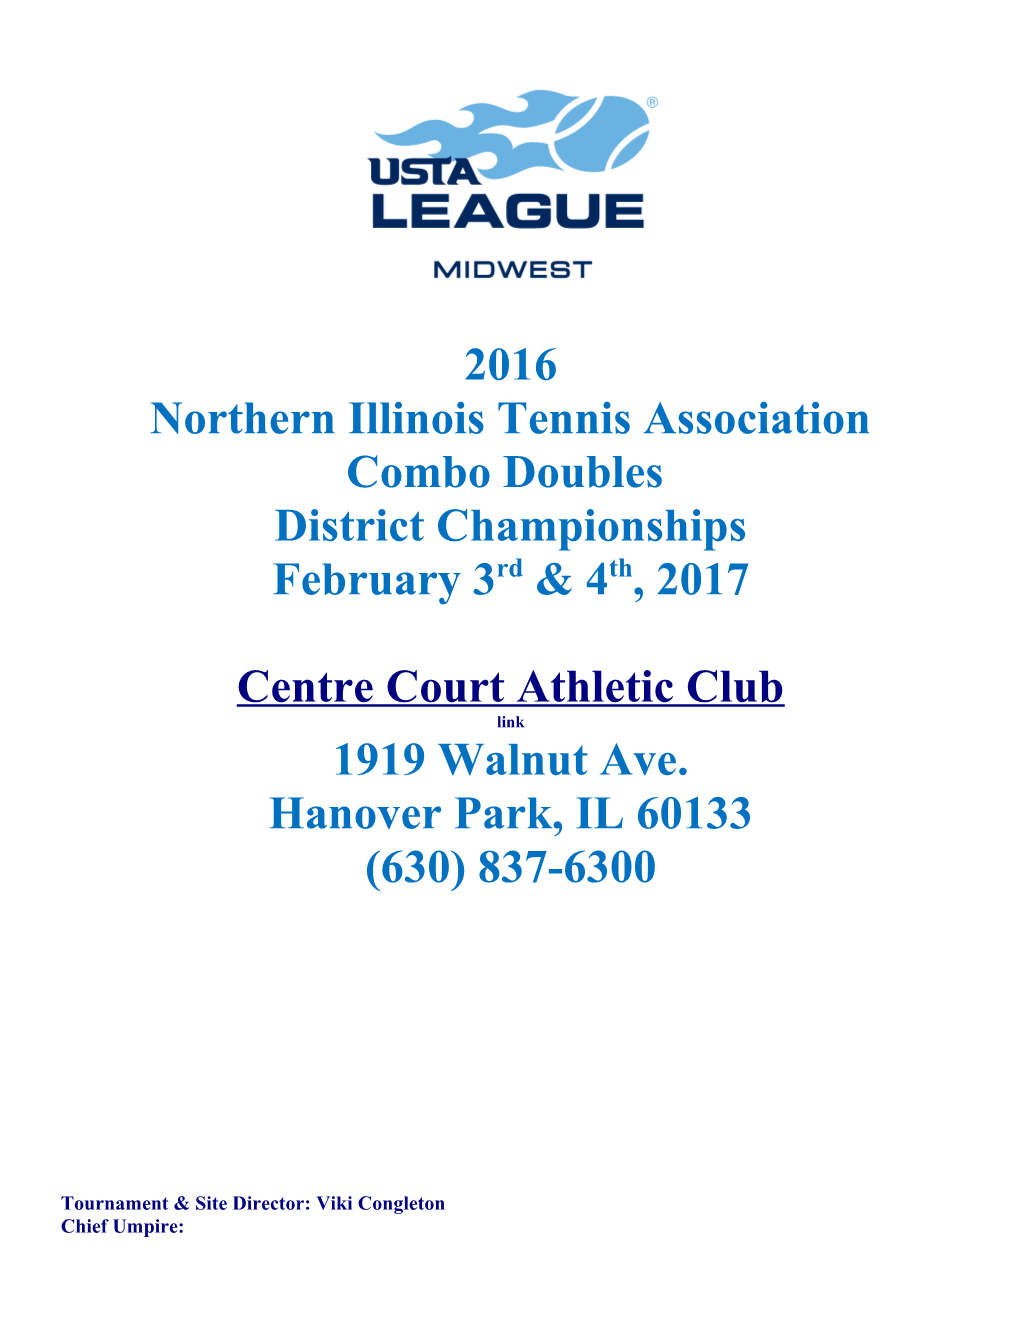 Northern Illinois Tennis Association